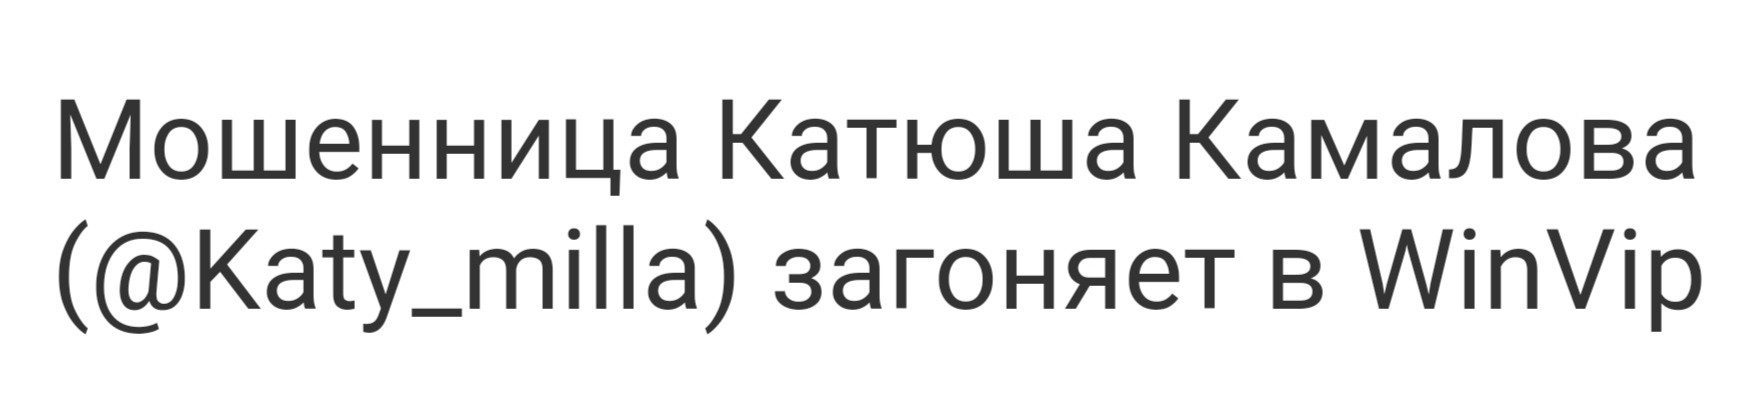 Катюша Камалова отзывы